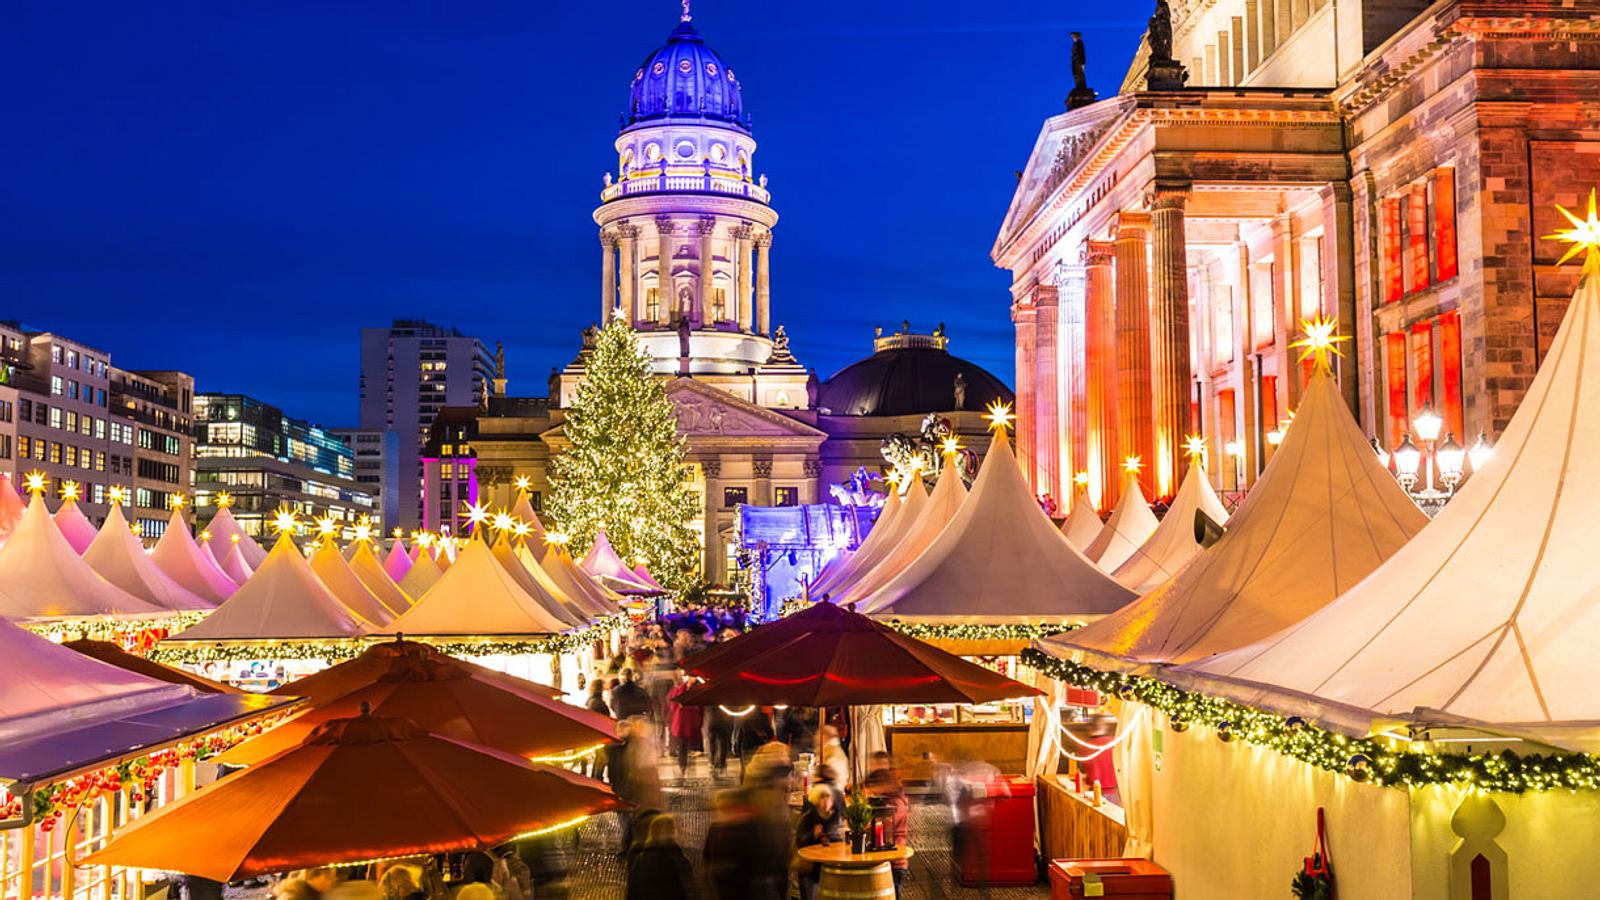 Weihnachtsmarkt Berlin Die 5 schönsten Märkte Männersache